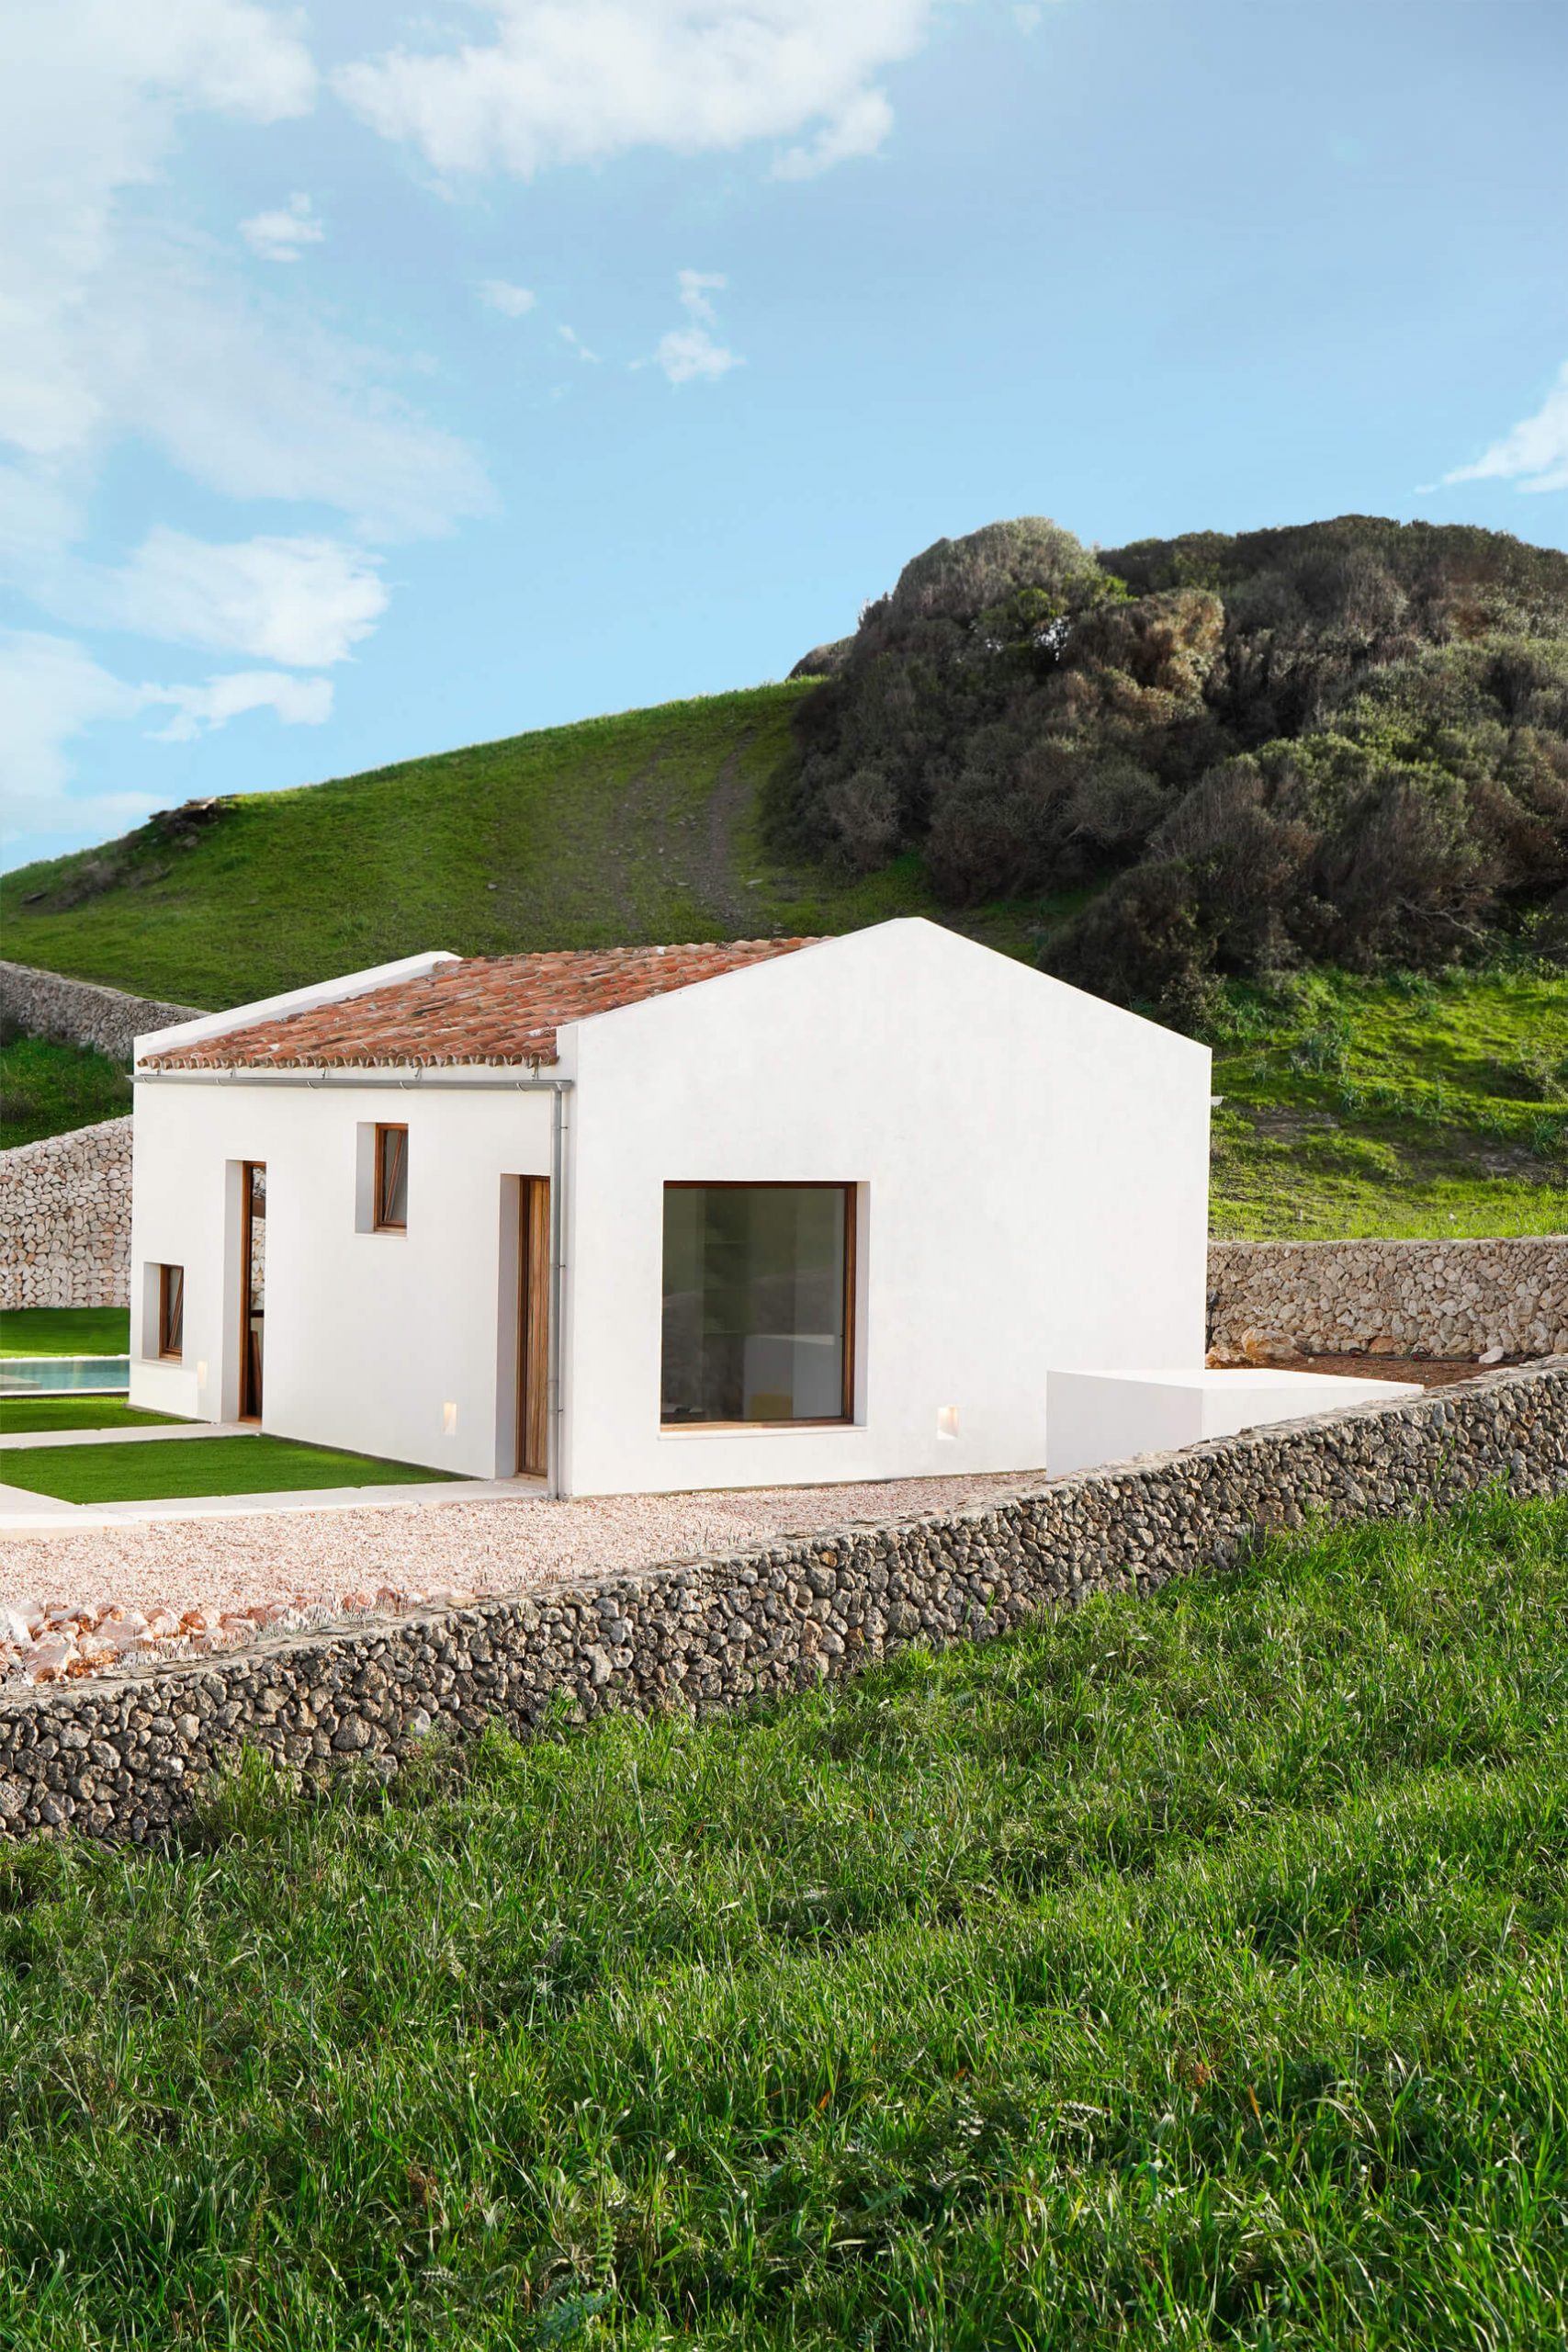 CasaE - Marina Senabre, Casa Minimalista fachada branca com janela quadrada e piscina, casa de campo.